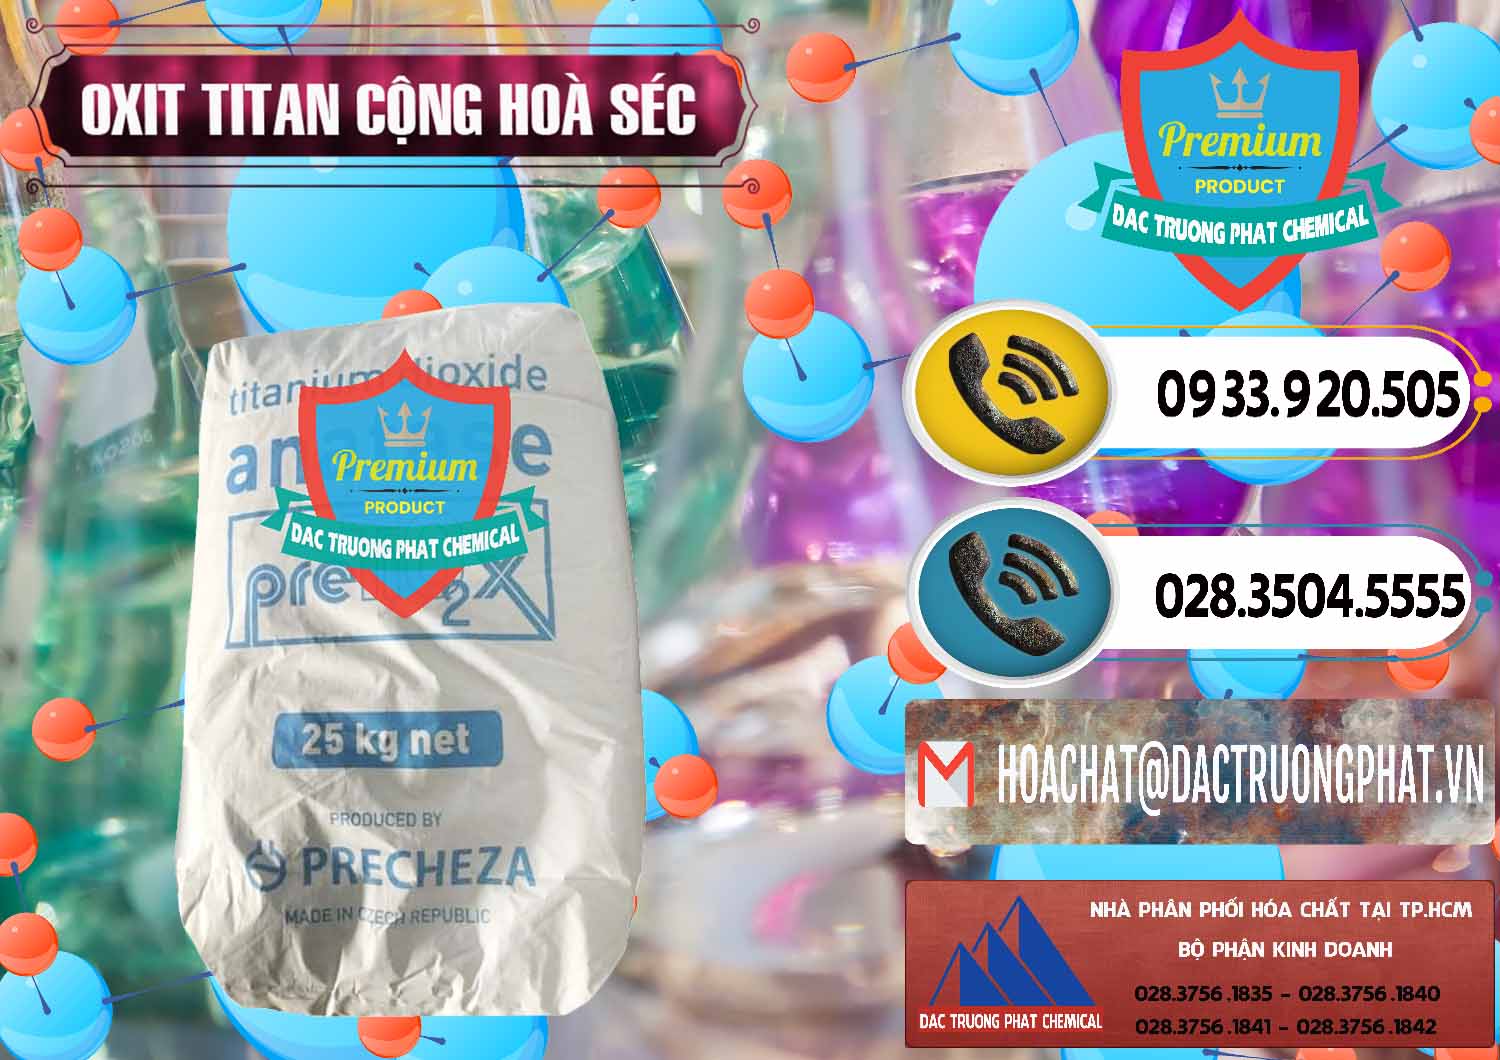 Chuyên cung ứng _ bán Oxit Titan KA100 – Tio2 Cộng Hòa Séc Czech Republic - 0407 - Nơi chuyên bán _ phân phối hóa chất tại TP.HCM - hoachatdetnhuom.vn